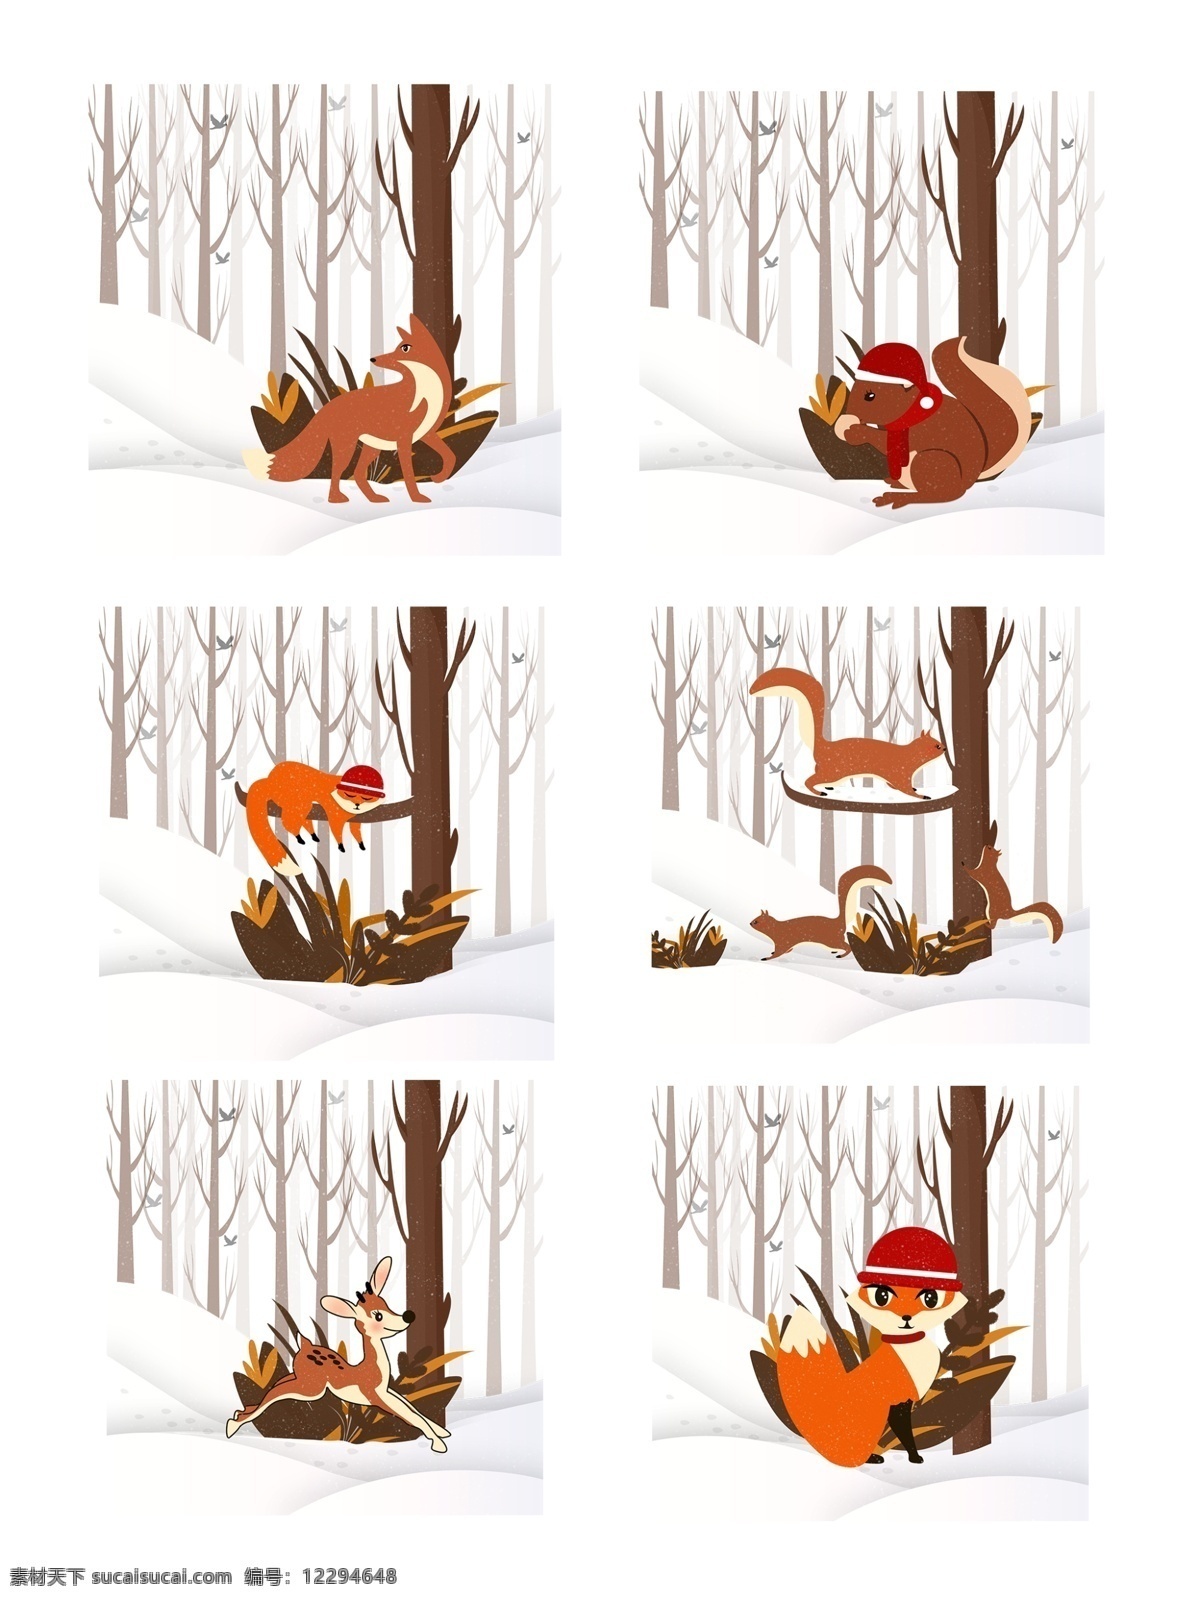 冬季 可爱 小 动物 元素 套 图 小动物 松鼠 小鹿 狐狸 雪地 冬季元素 动物元素 冬季树林